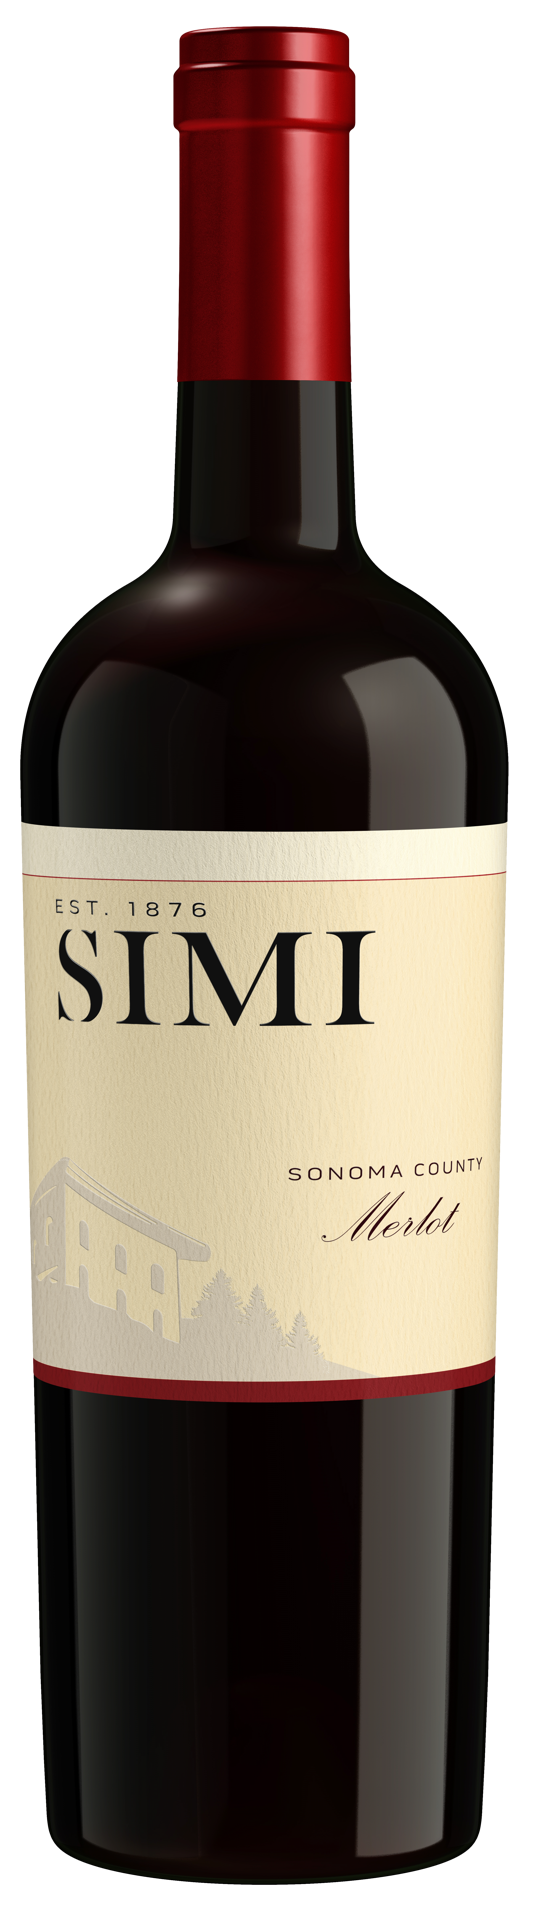 slide 1 of 7, SIMI Sonoma County Merlot Red Wine, 750 mL Bottle, 25.36 fl oz